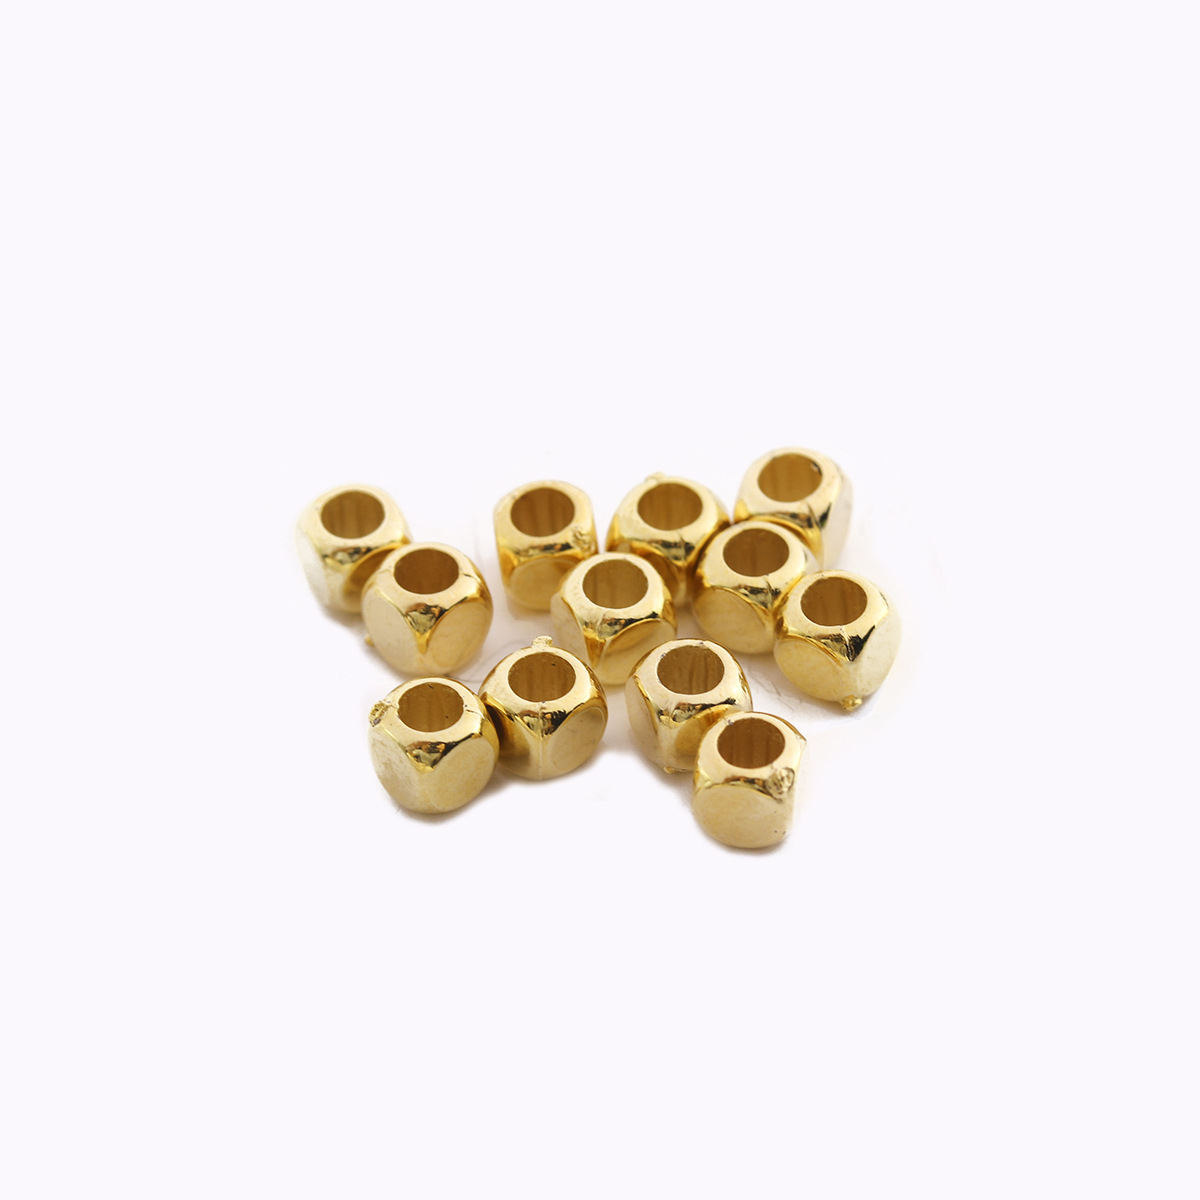 Gold outer diameter 4mm, inner diameter 2.5mm